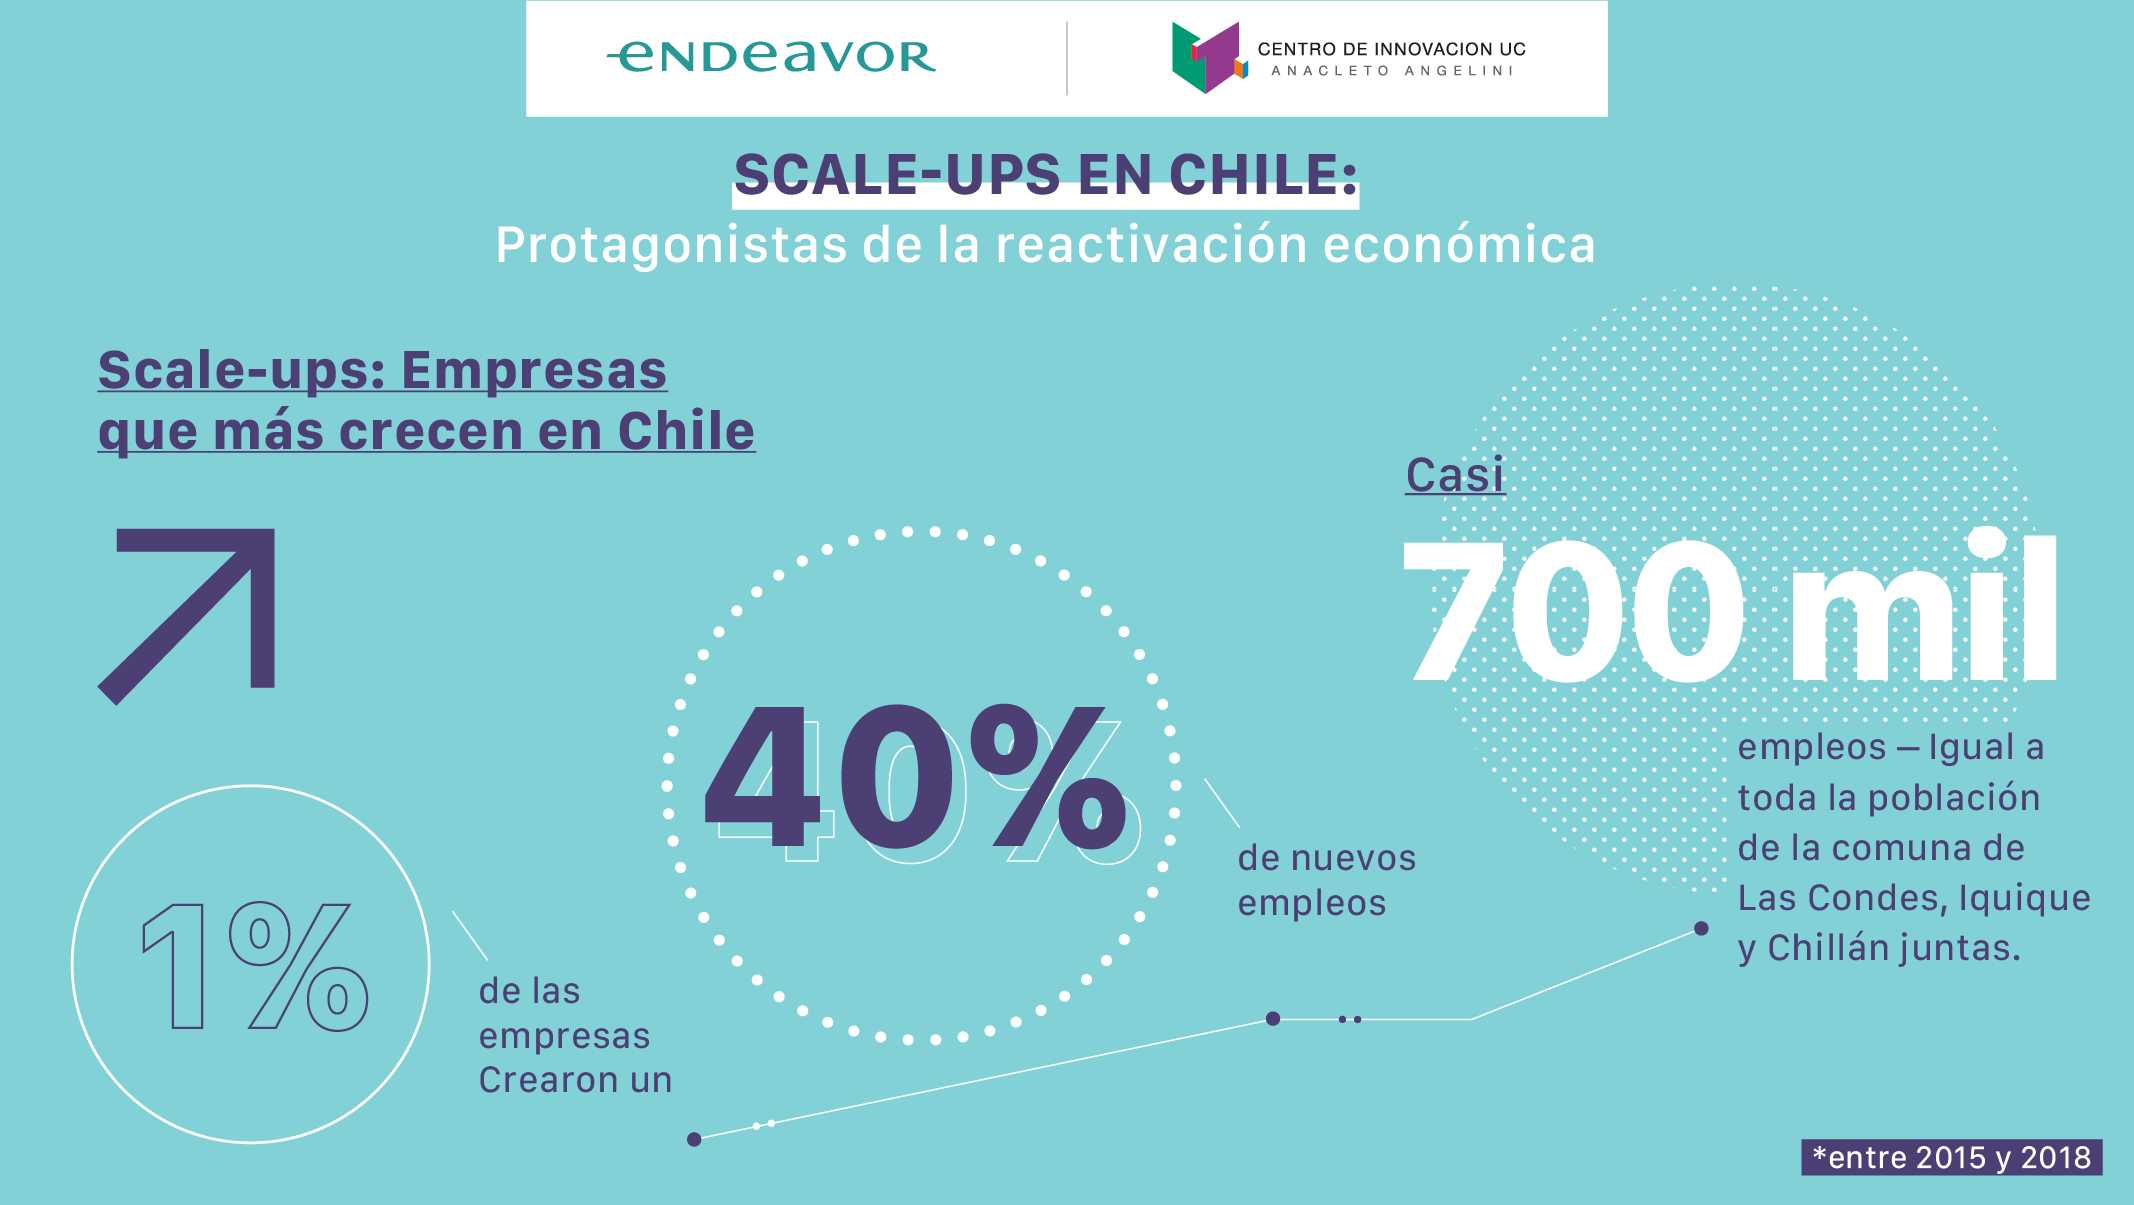 Estudio de Endeavor y Centro de Innovación UC: Las scale-ups son el 1% de las empresas en Chile y crearon un 40% de los empleos